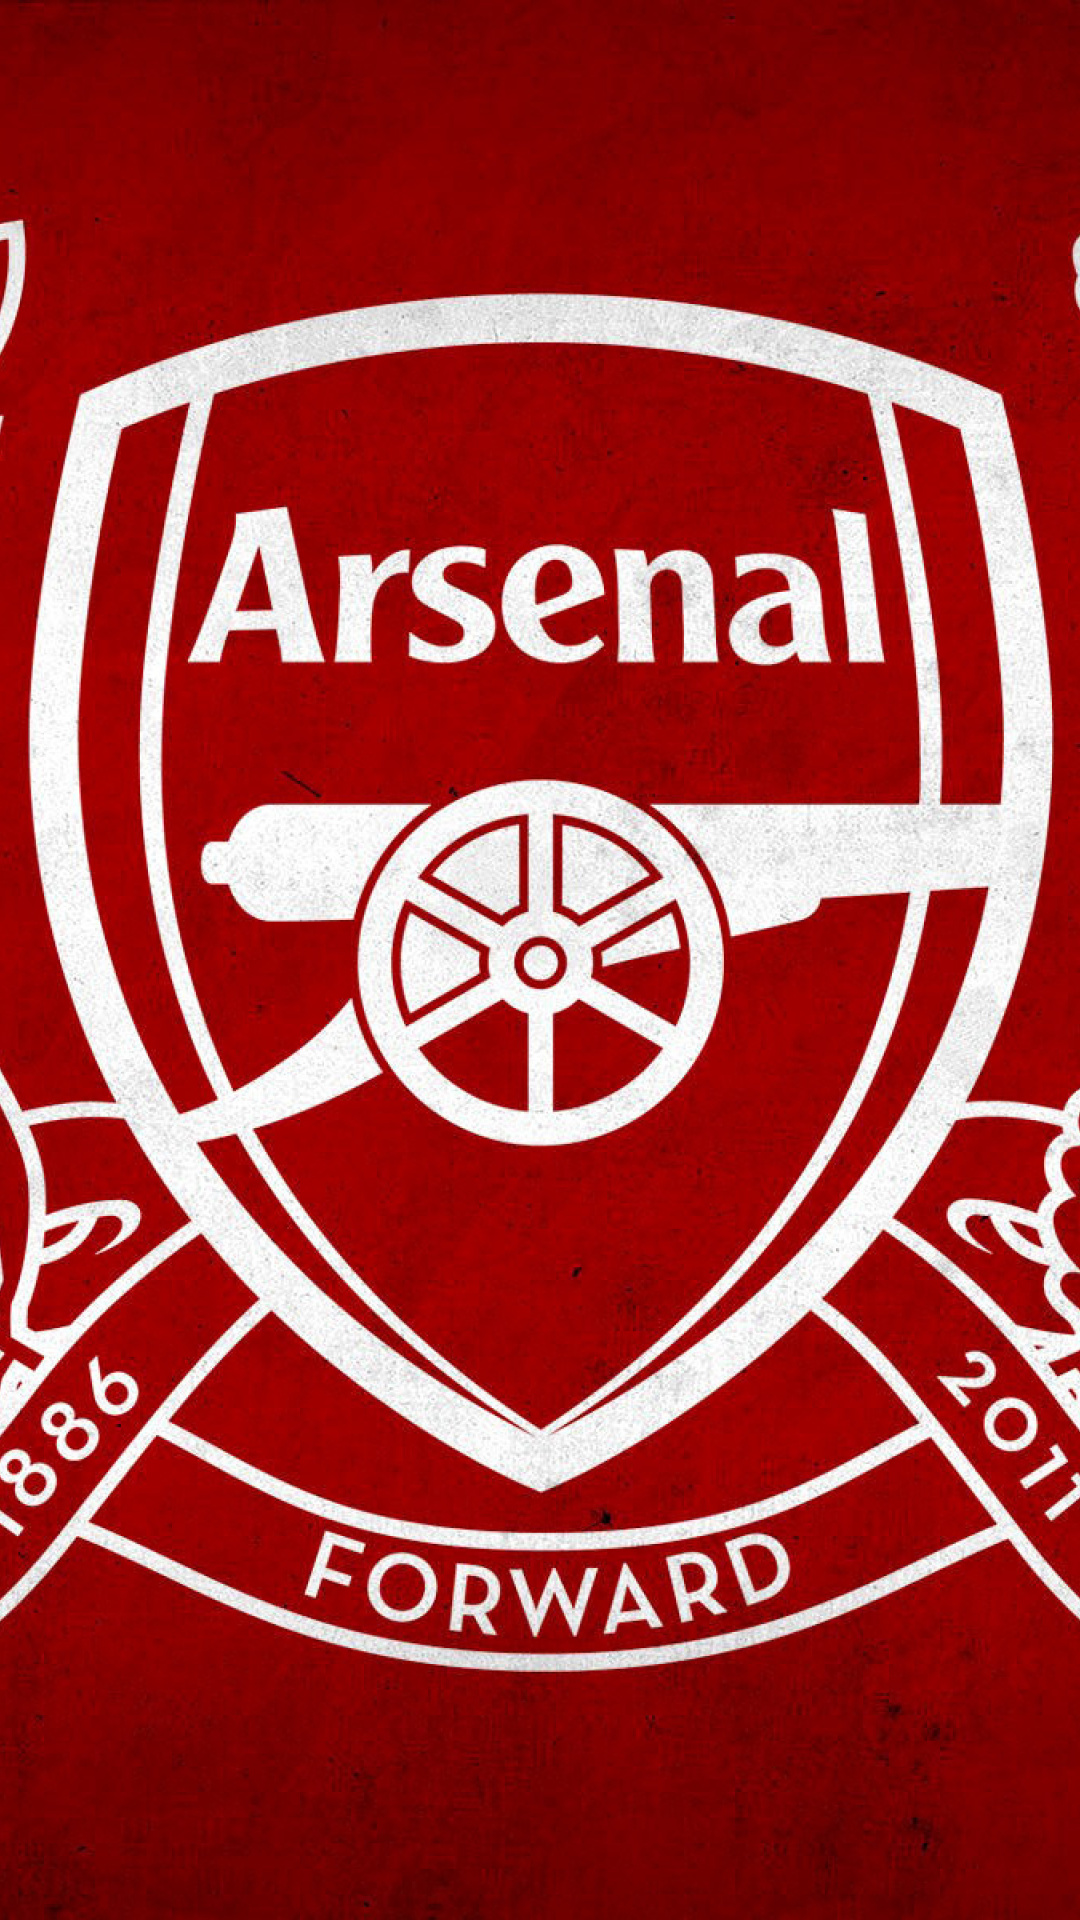 Arsenal Logo Wallpaper For Mobile Free Download - Arsenal Logo Black And White , HD Wallpaper & Backgrounds